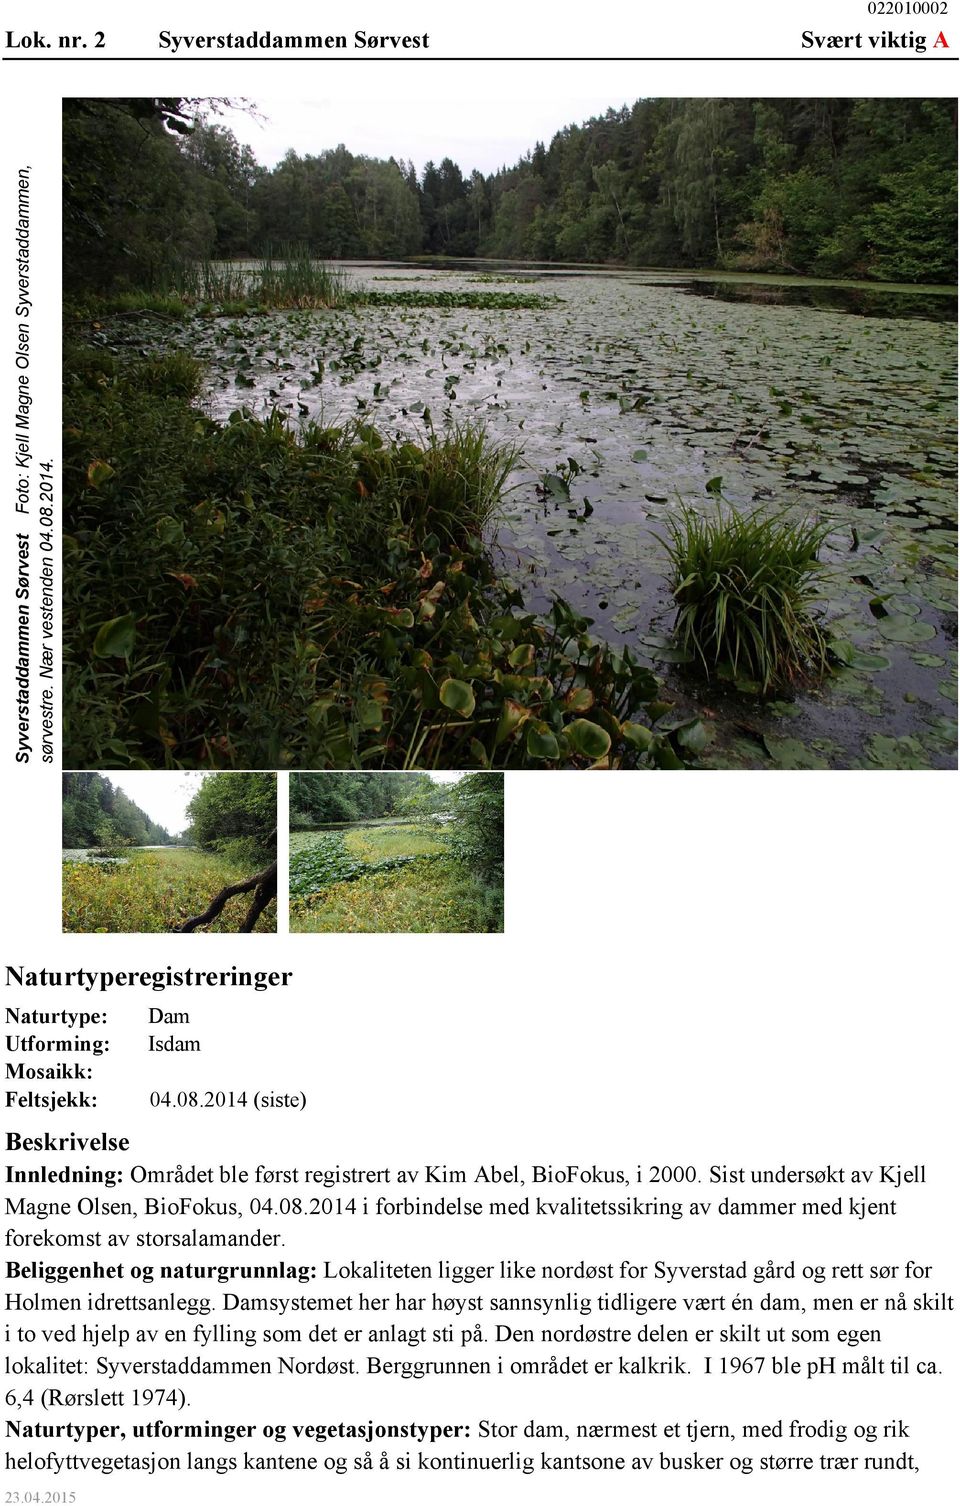 Sist undersøkt av Kjell Magne Olsen, BioFokus, 04.08.2014 i forbindelse med kvalitetssikring av dammer med kjent forekomst av storsalamander.